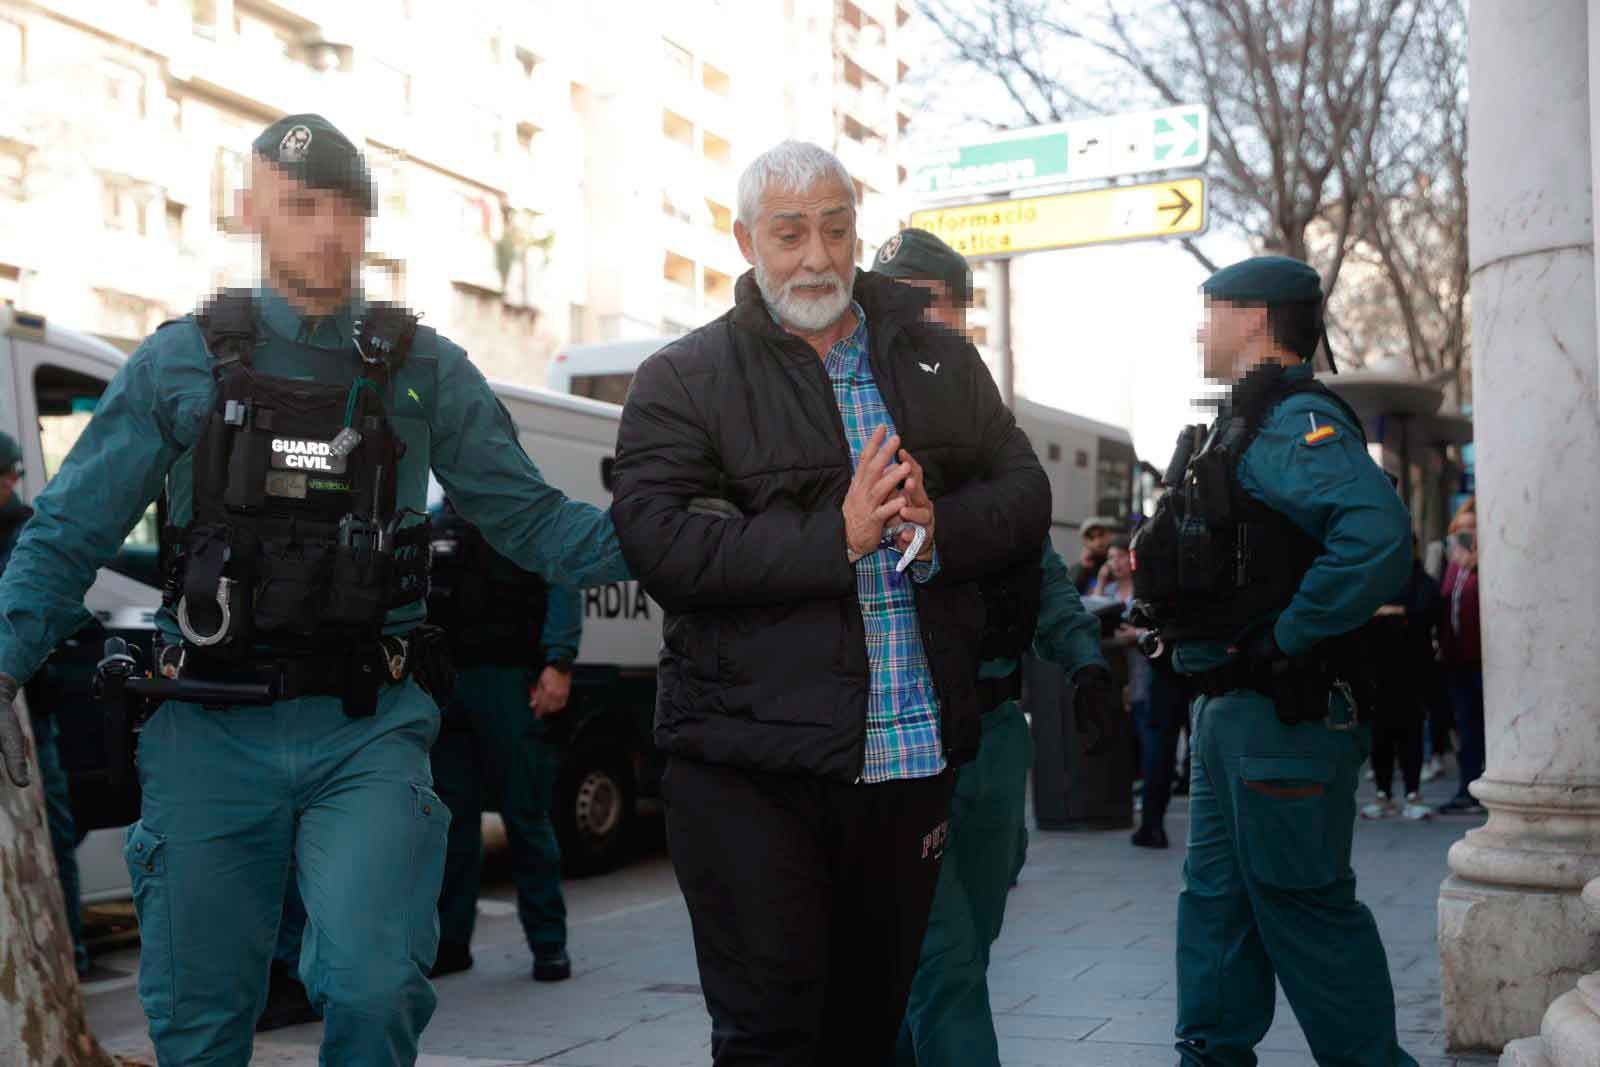 La Guardia Civil traslada al juzgado a 23 detenidos en la operación antidroga entre grandes medidas de seguridad